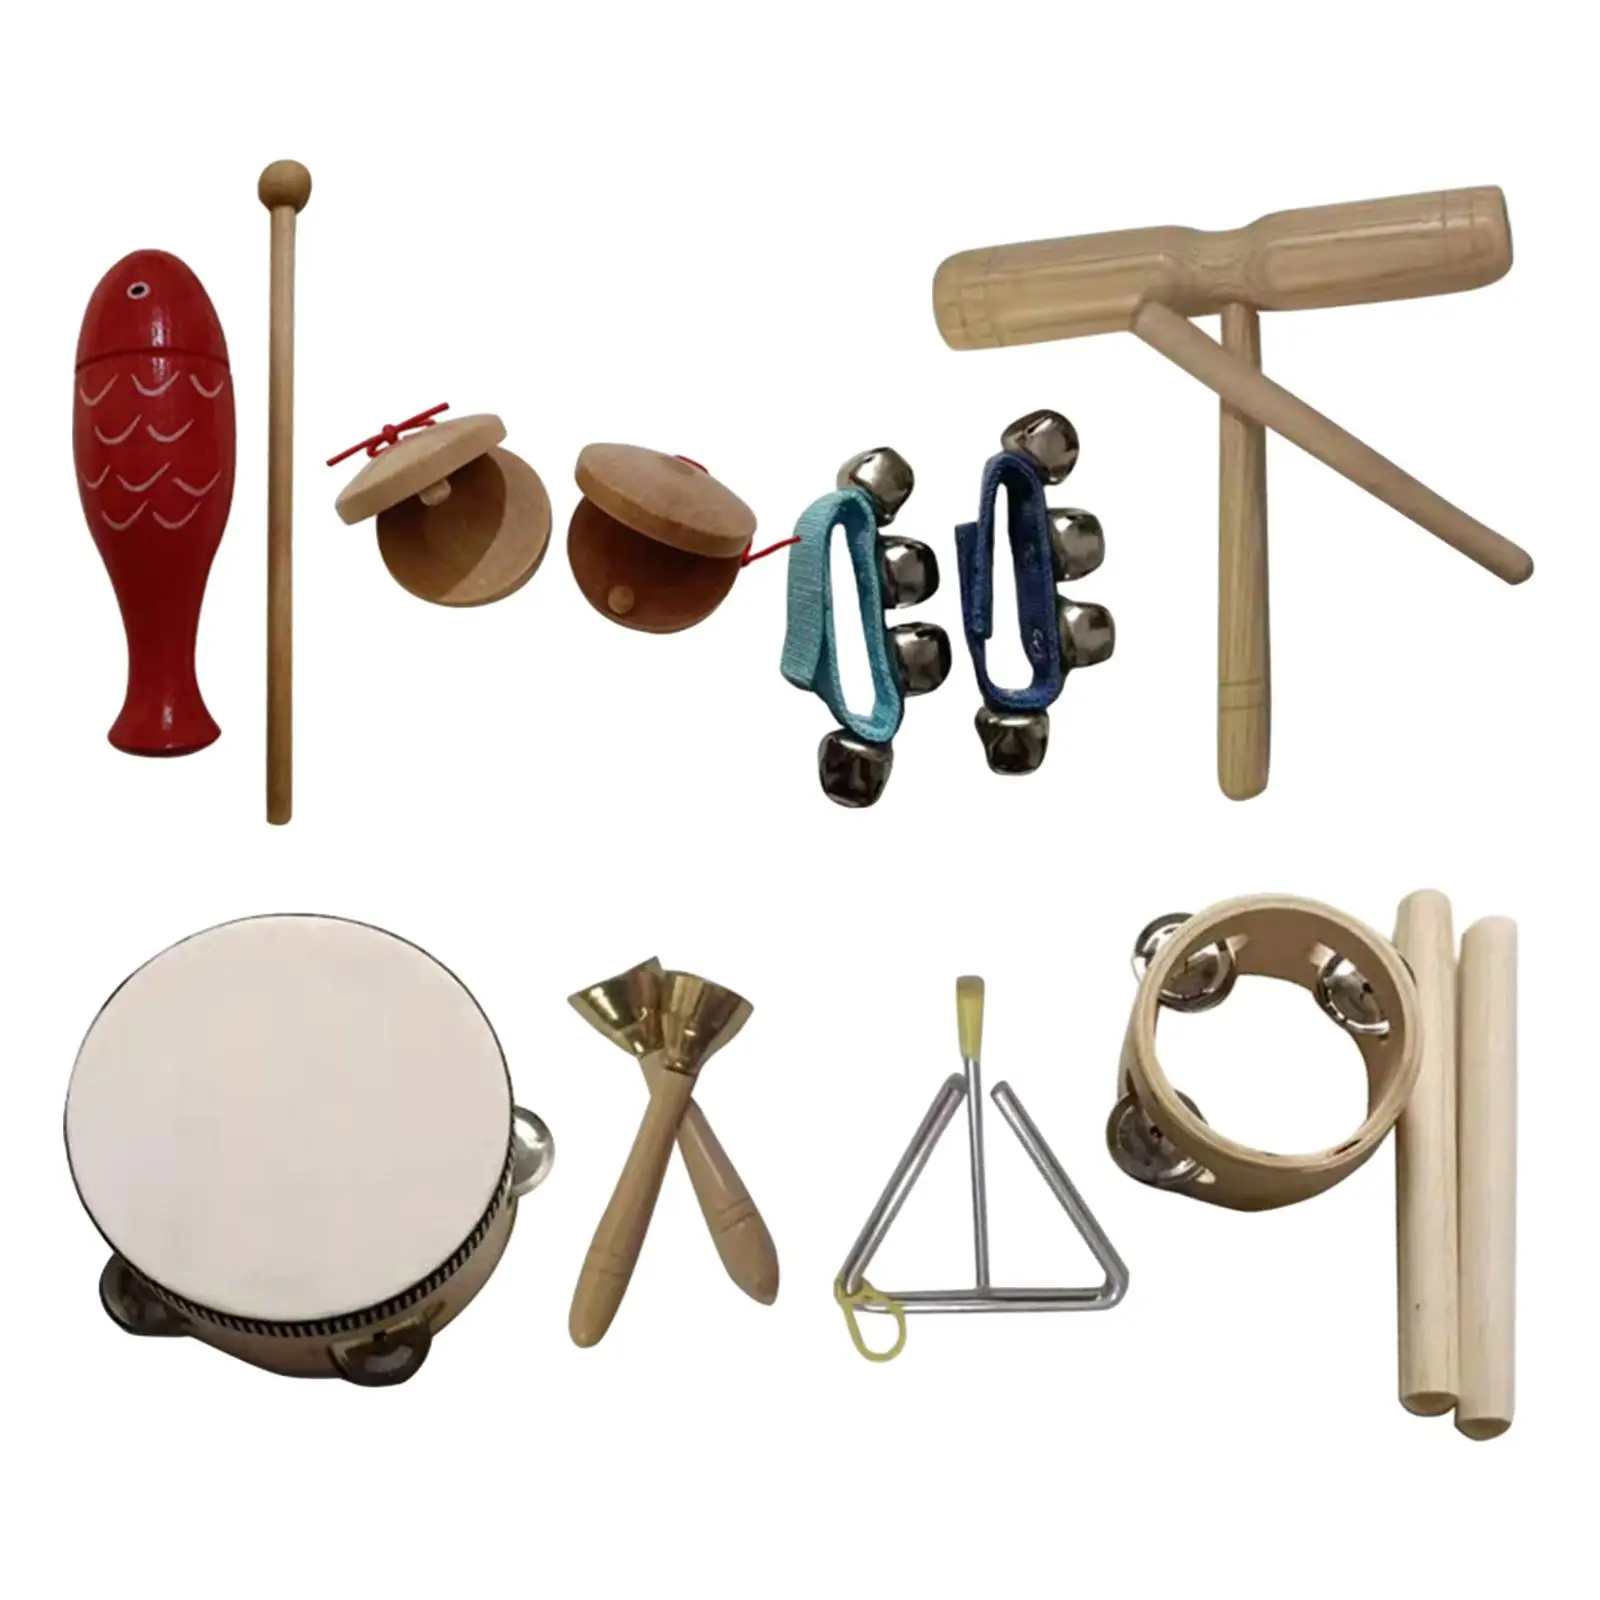 набор из 9 деревянных ударных инструментов, улучшающий творческие способности и координацию, ритмическое устройство для малышей, мальчиков и девочек в возрасте от 3 до 10 лет